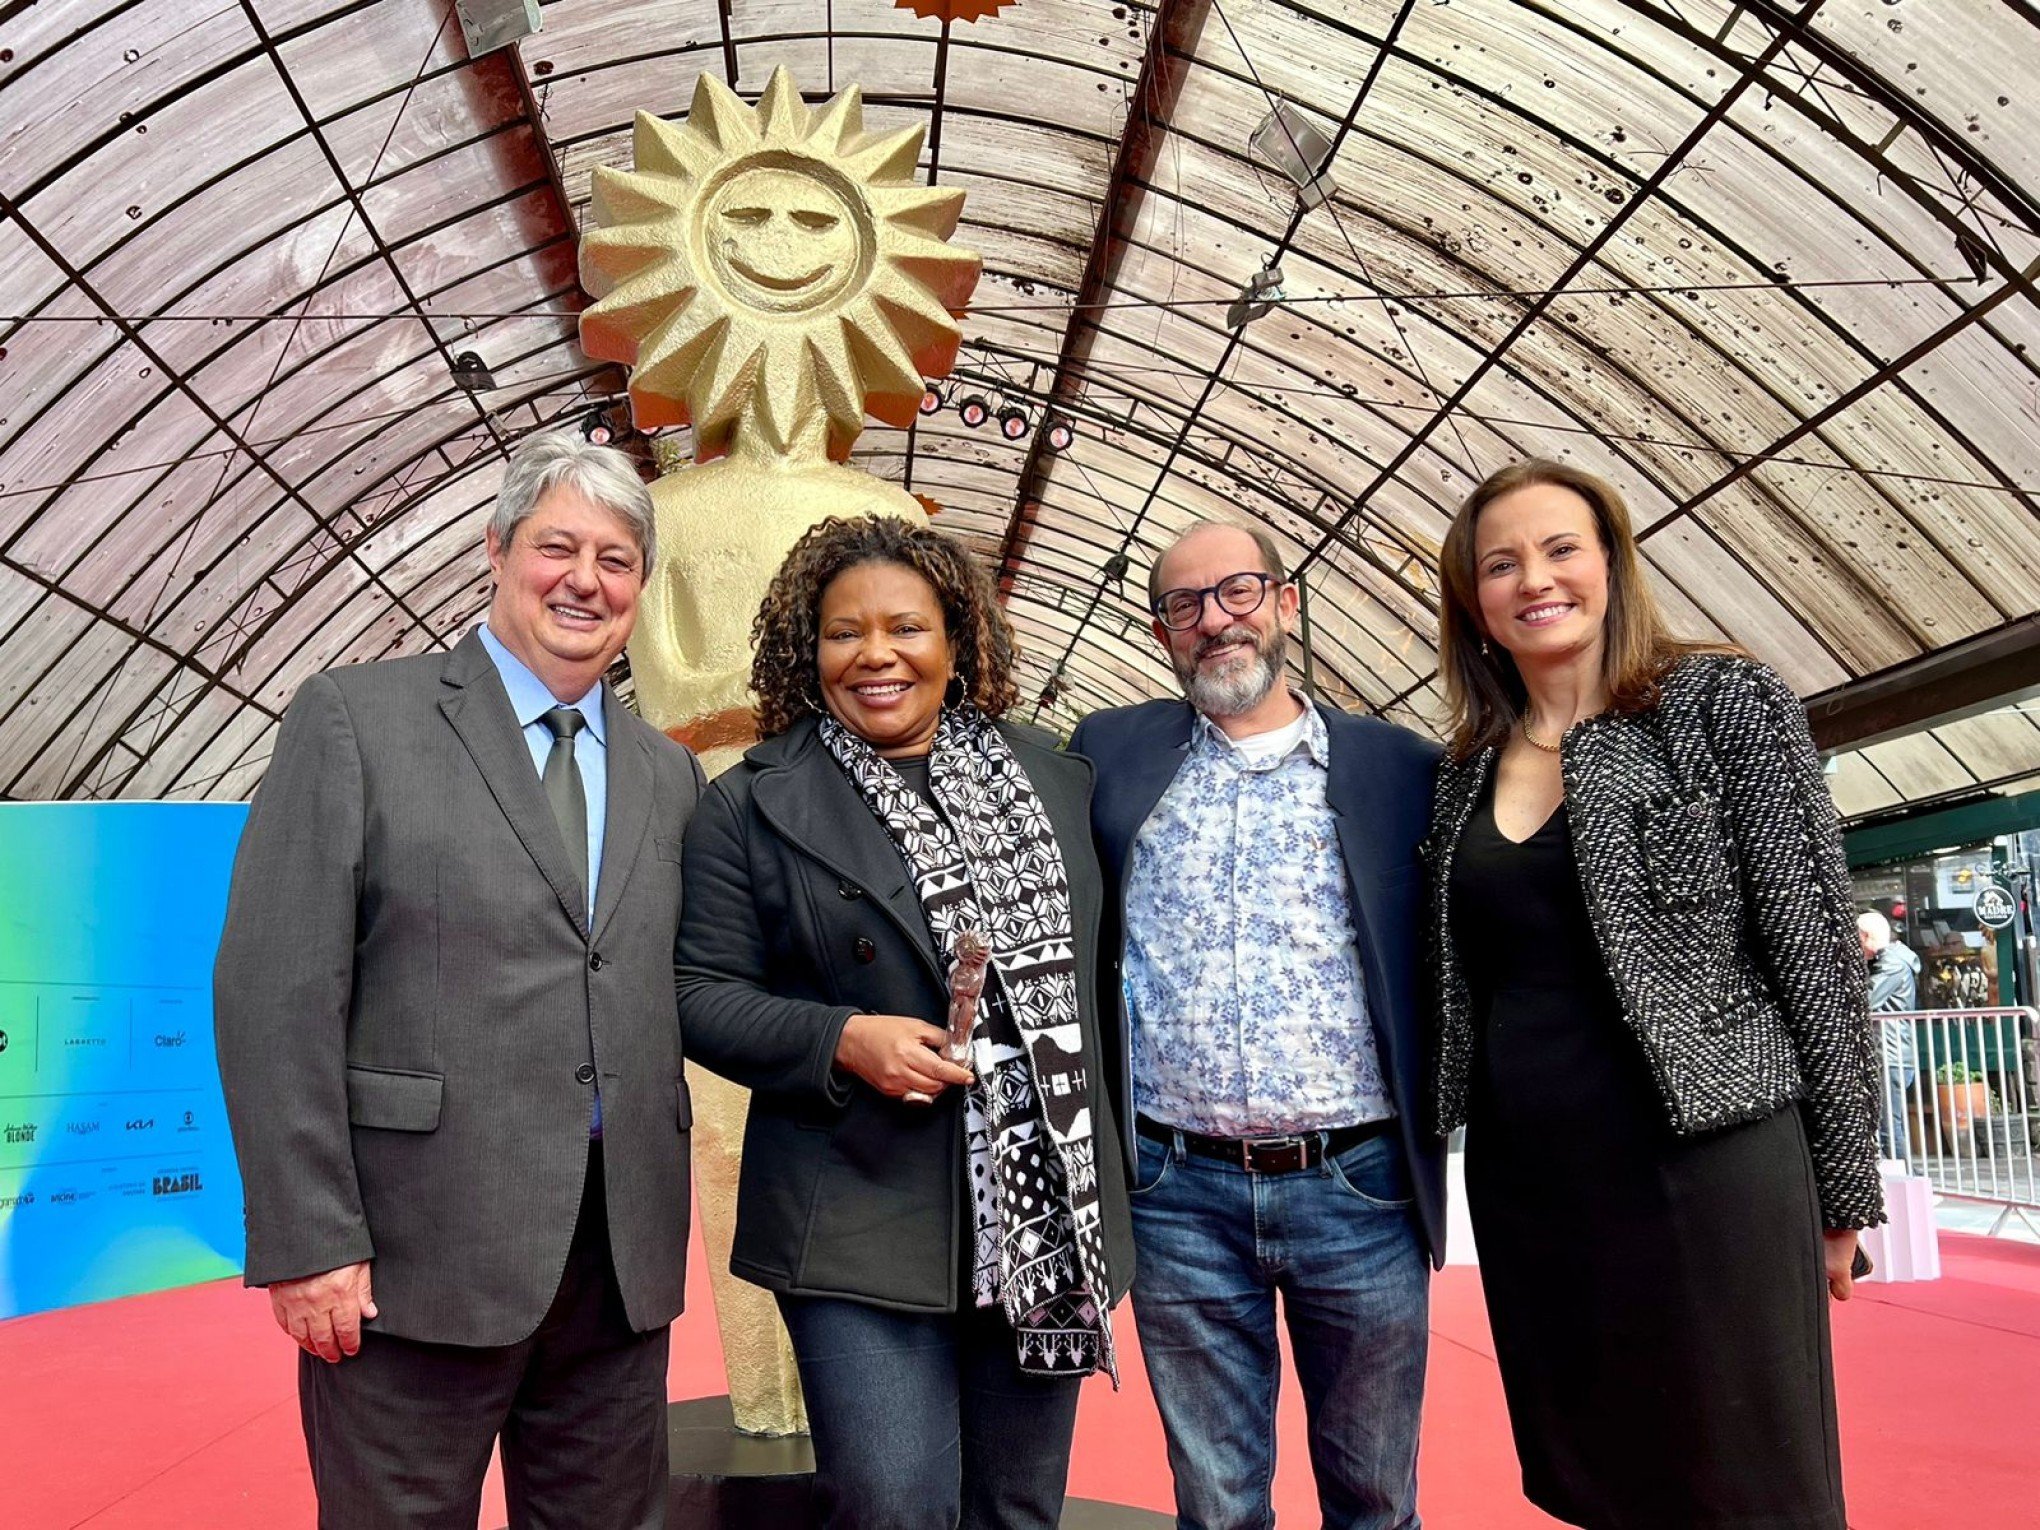 FESTIVAL DE CINEMA: "A cidade de Gramado é maravilhosa", diz ministra da Cultura Margareth Menezes na abertura oficial do evento